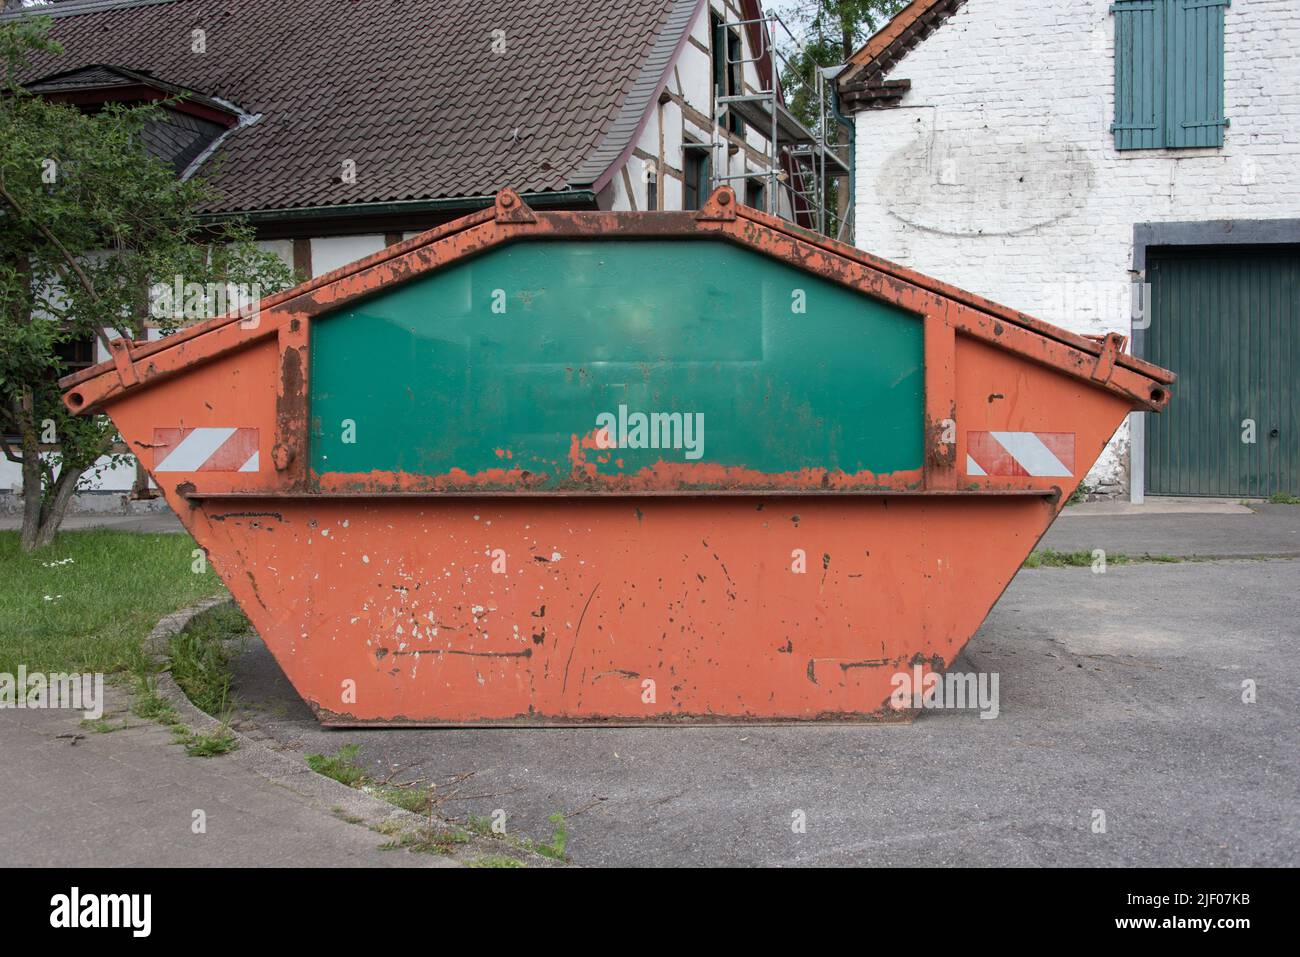 Seitenansicht eines orange-grünen Behälters oder Müllers. Der Container steht vor einem historischen Gebäude, das gerade umgebaut wird. Stockfoto